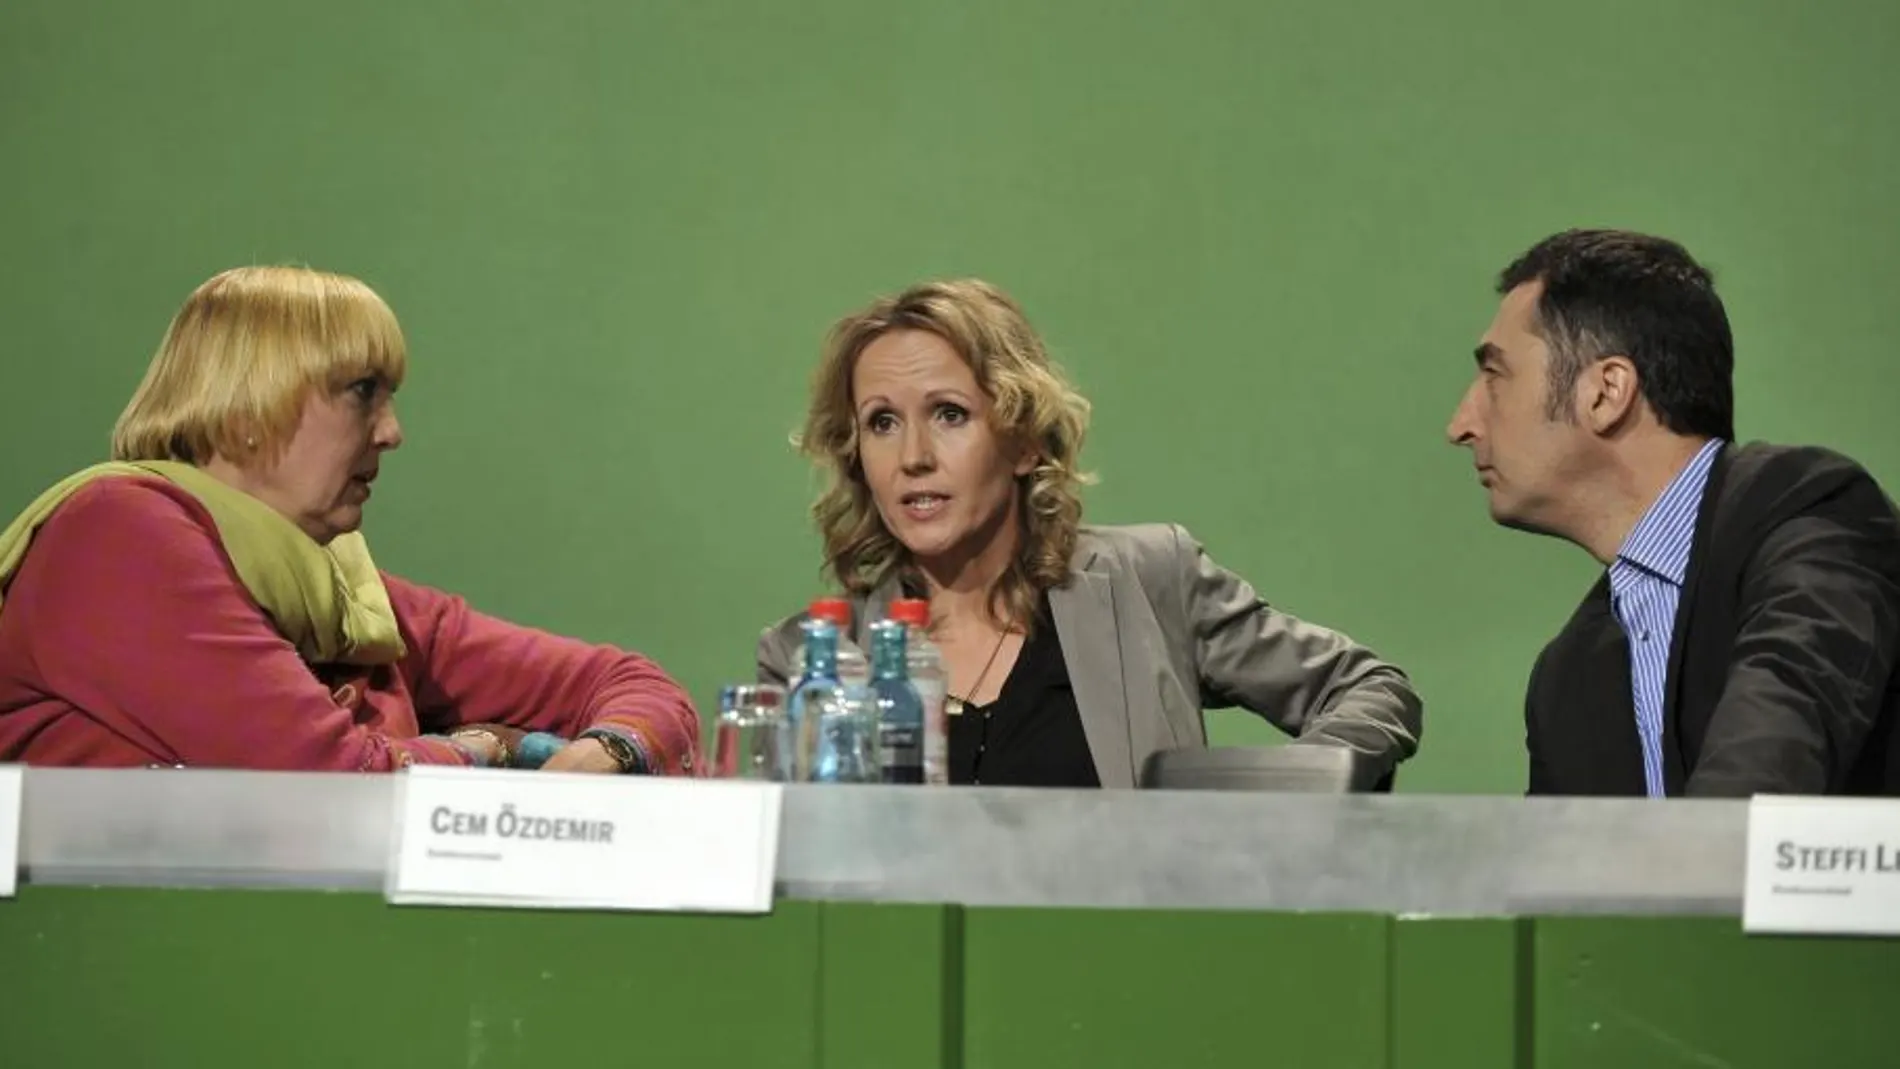 Los presidentes de los Verdes Claudia Roth (izda) y Cem Özdemir conversa con la secretaria de organización Steffi Lemke, durante la reunión del partido en el Velódromo de Berlín